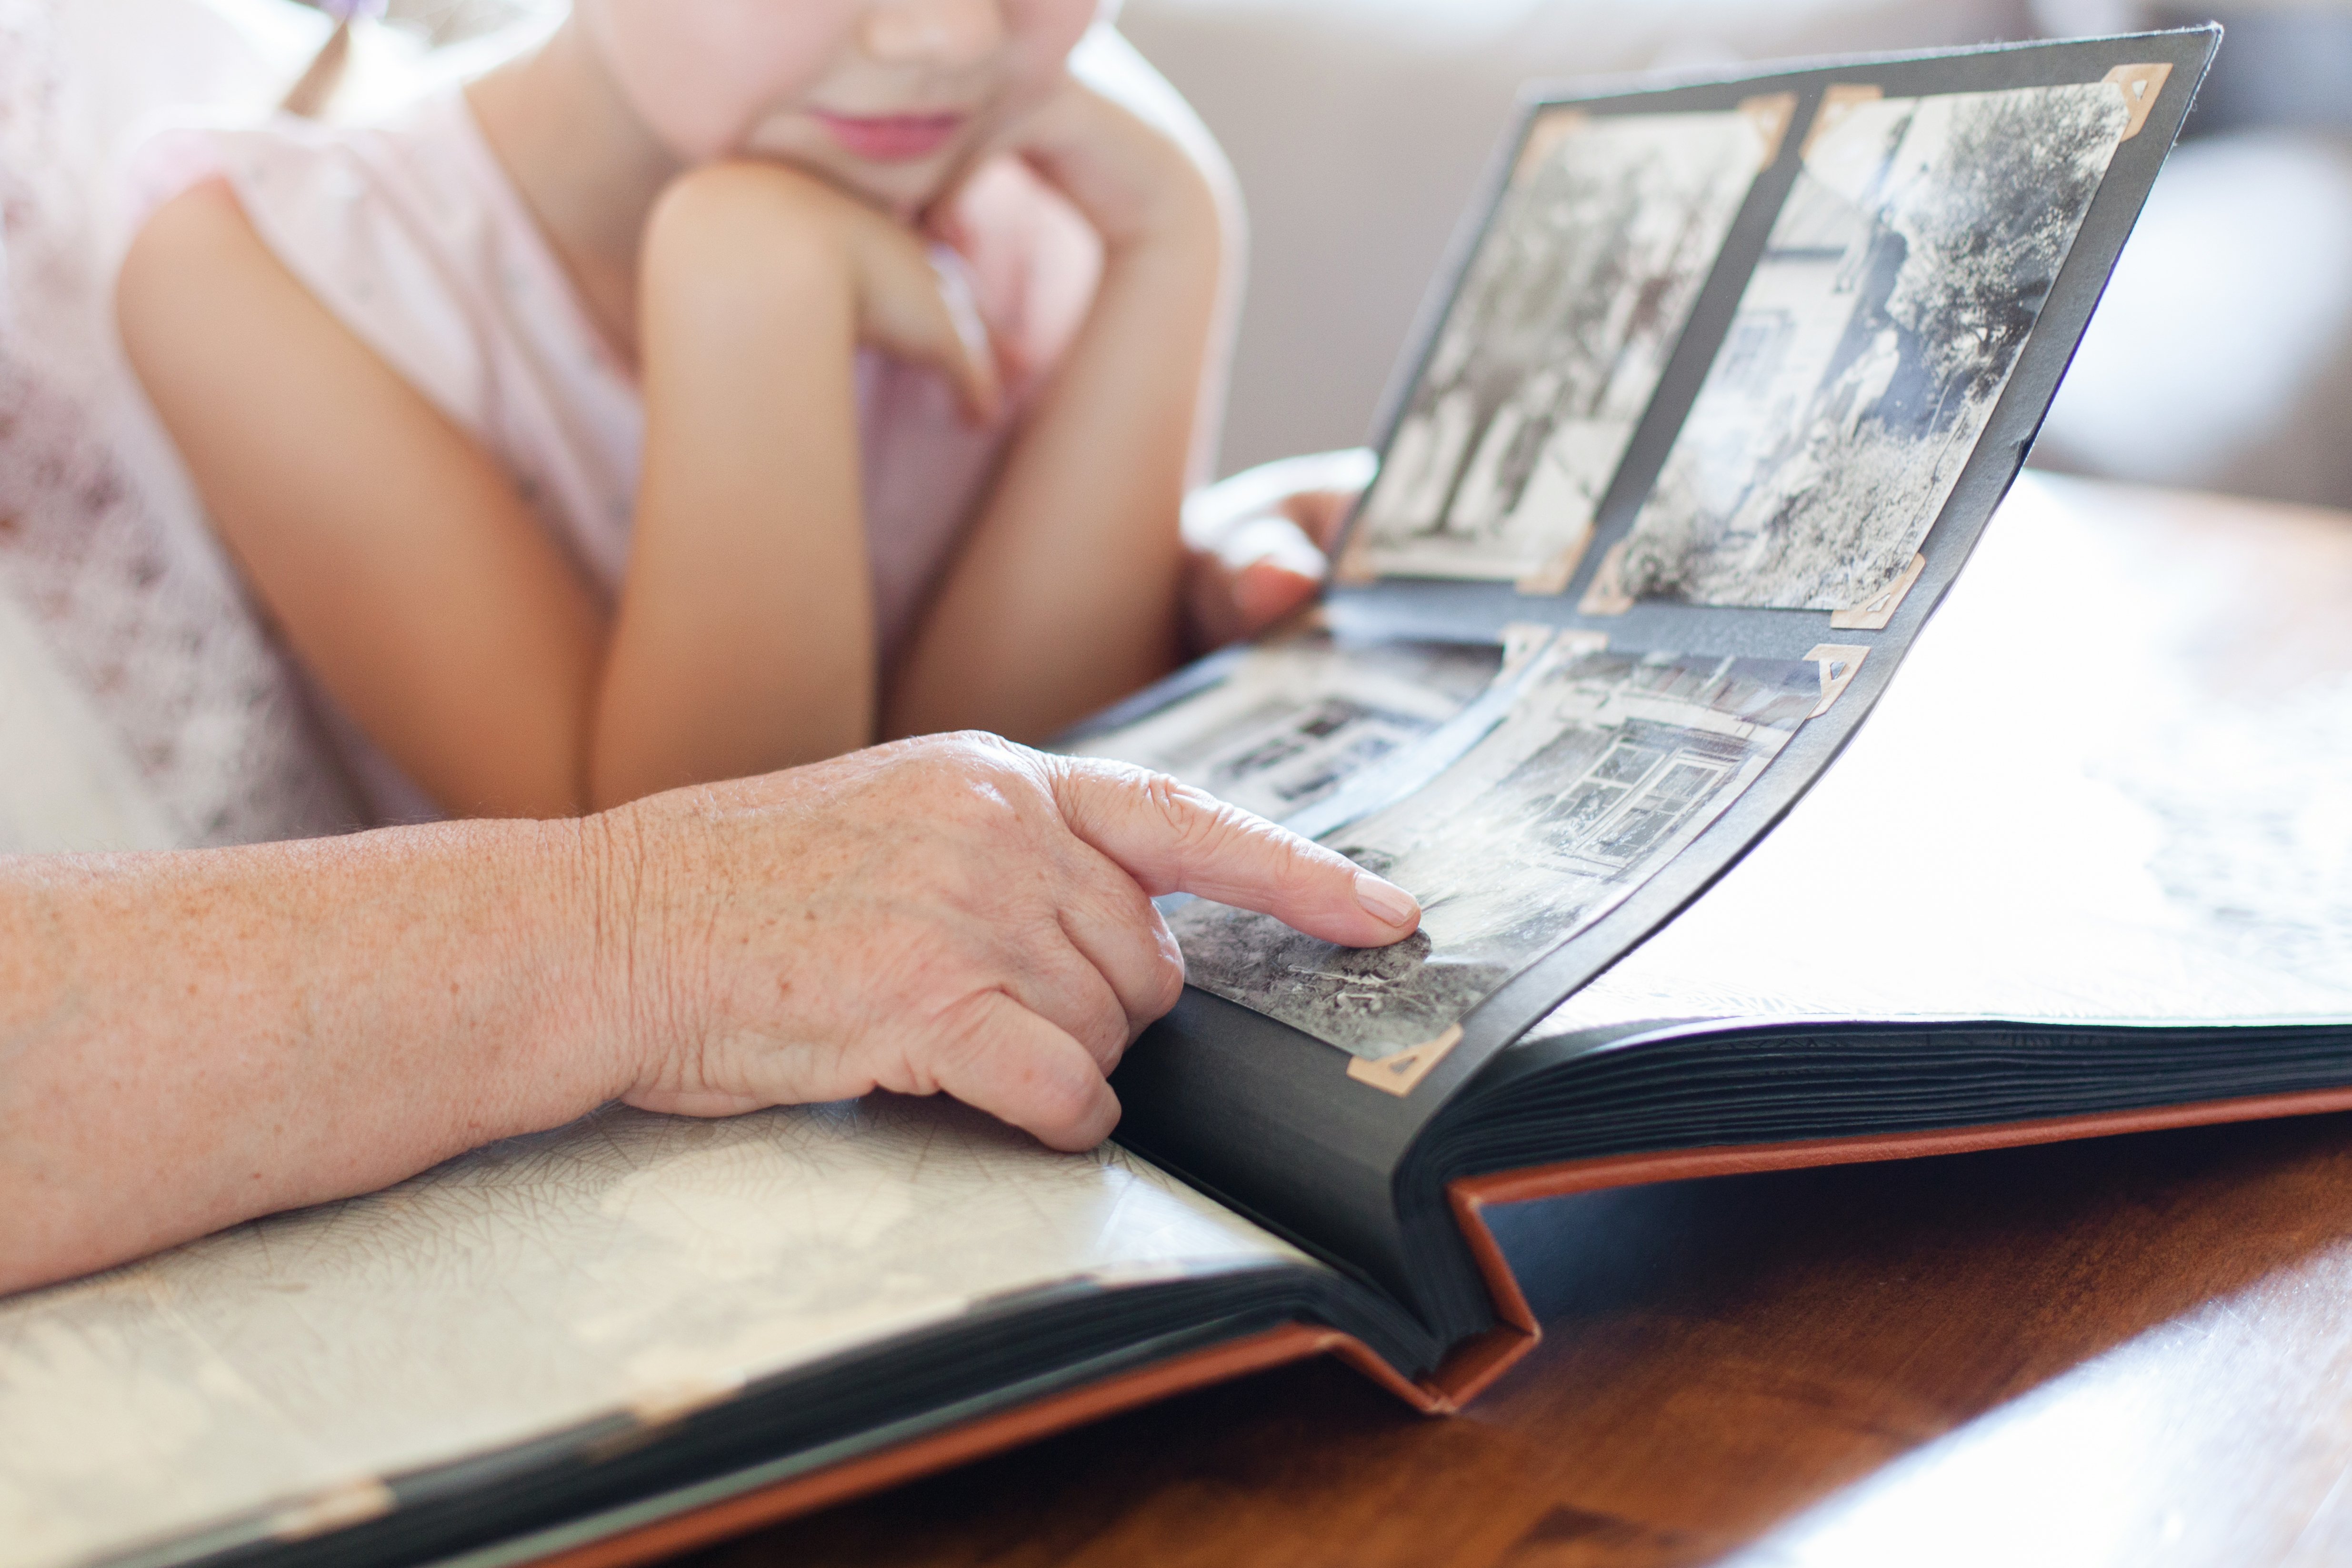 Abuela y nieta viendo fotos familiares. | Foto: Shutterstock